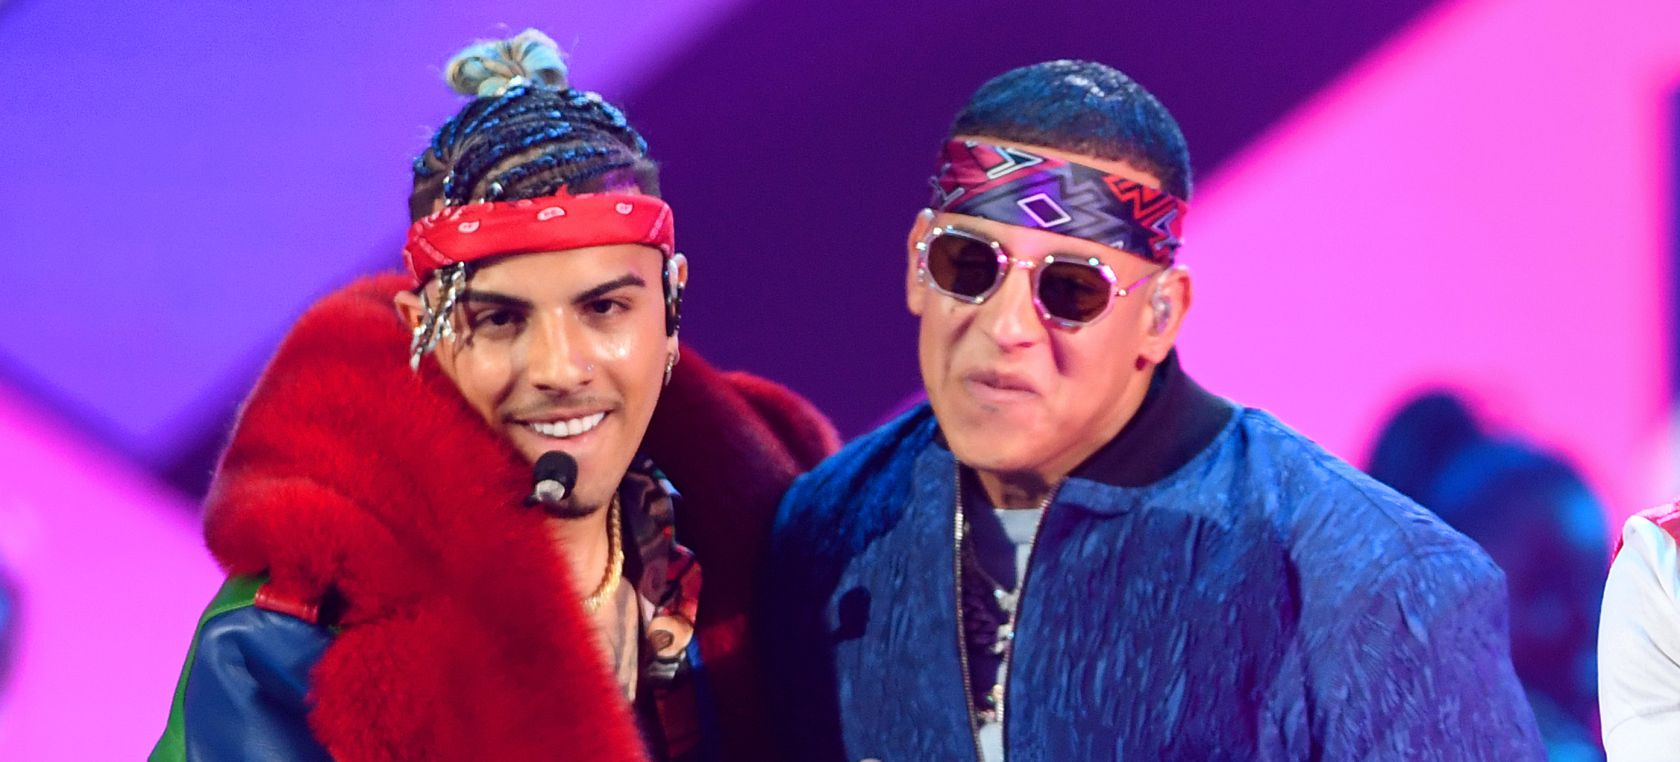 ¡Locura en directo! Rauw Alejandro hace sonar el ‘Track 7’ con Daddy Yankee frente a centenas de fans